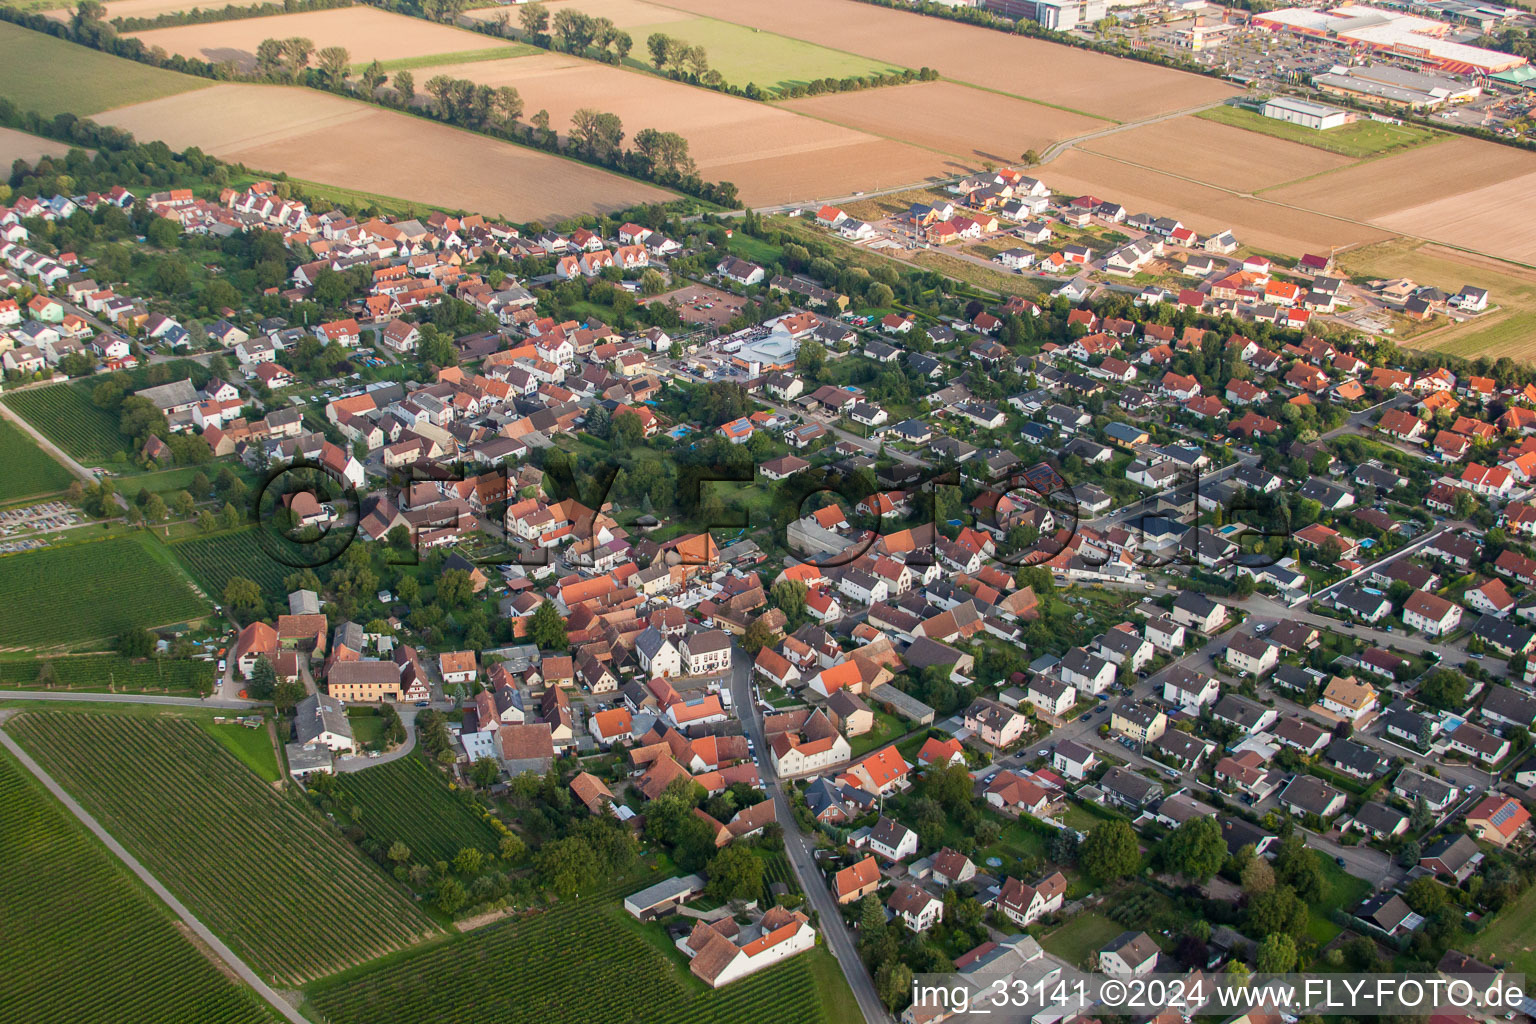 Vue aérienne de Champs agricoles et surfaces utilisables à Bornheim dans le département Rhénanie-Palatinat, Allemagne